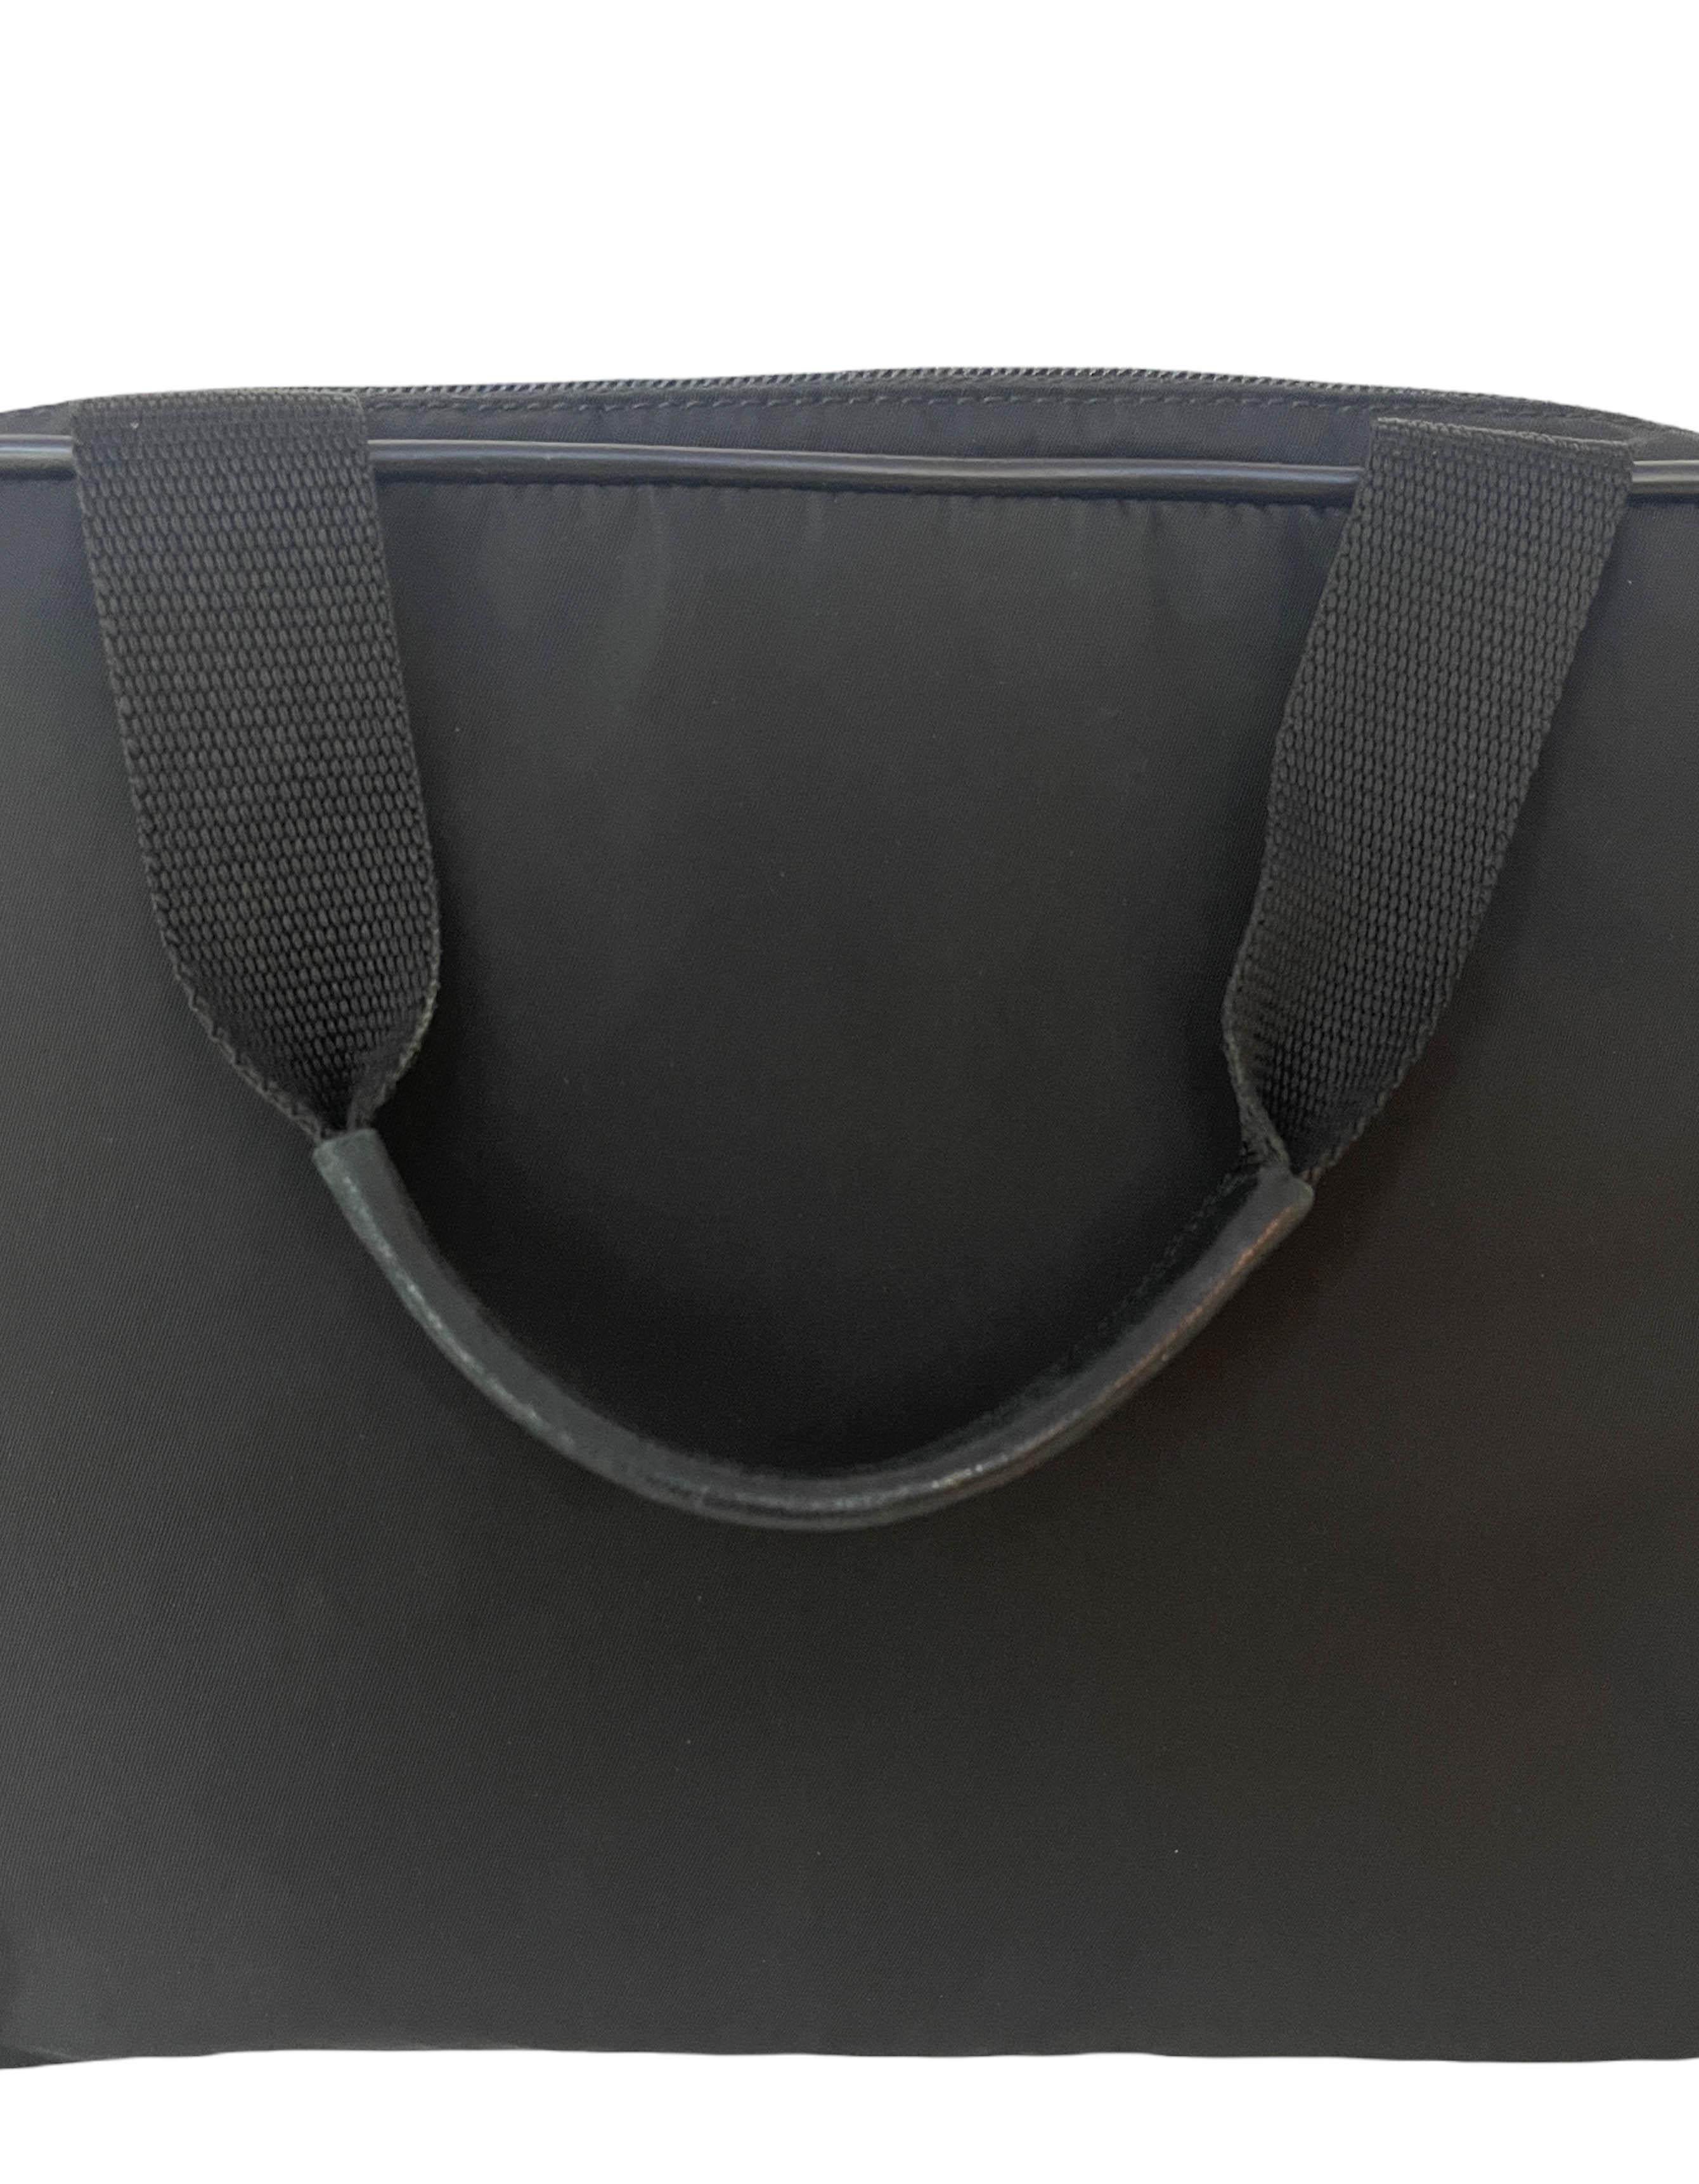 Prada Vintage Black Tessuto Nylon Handbag 2